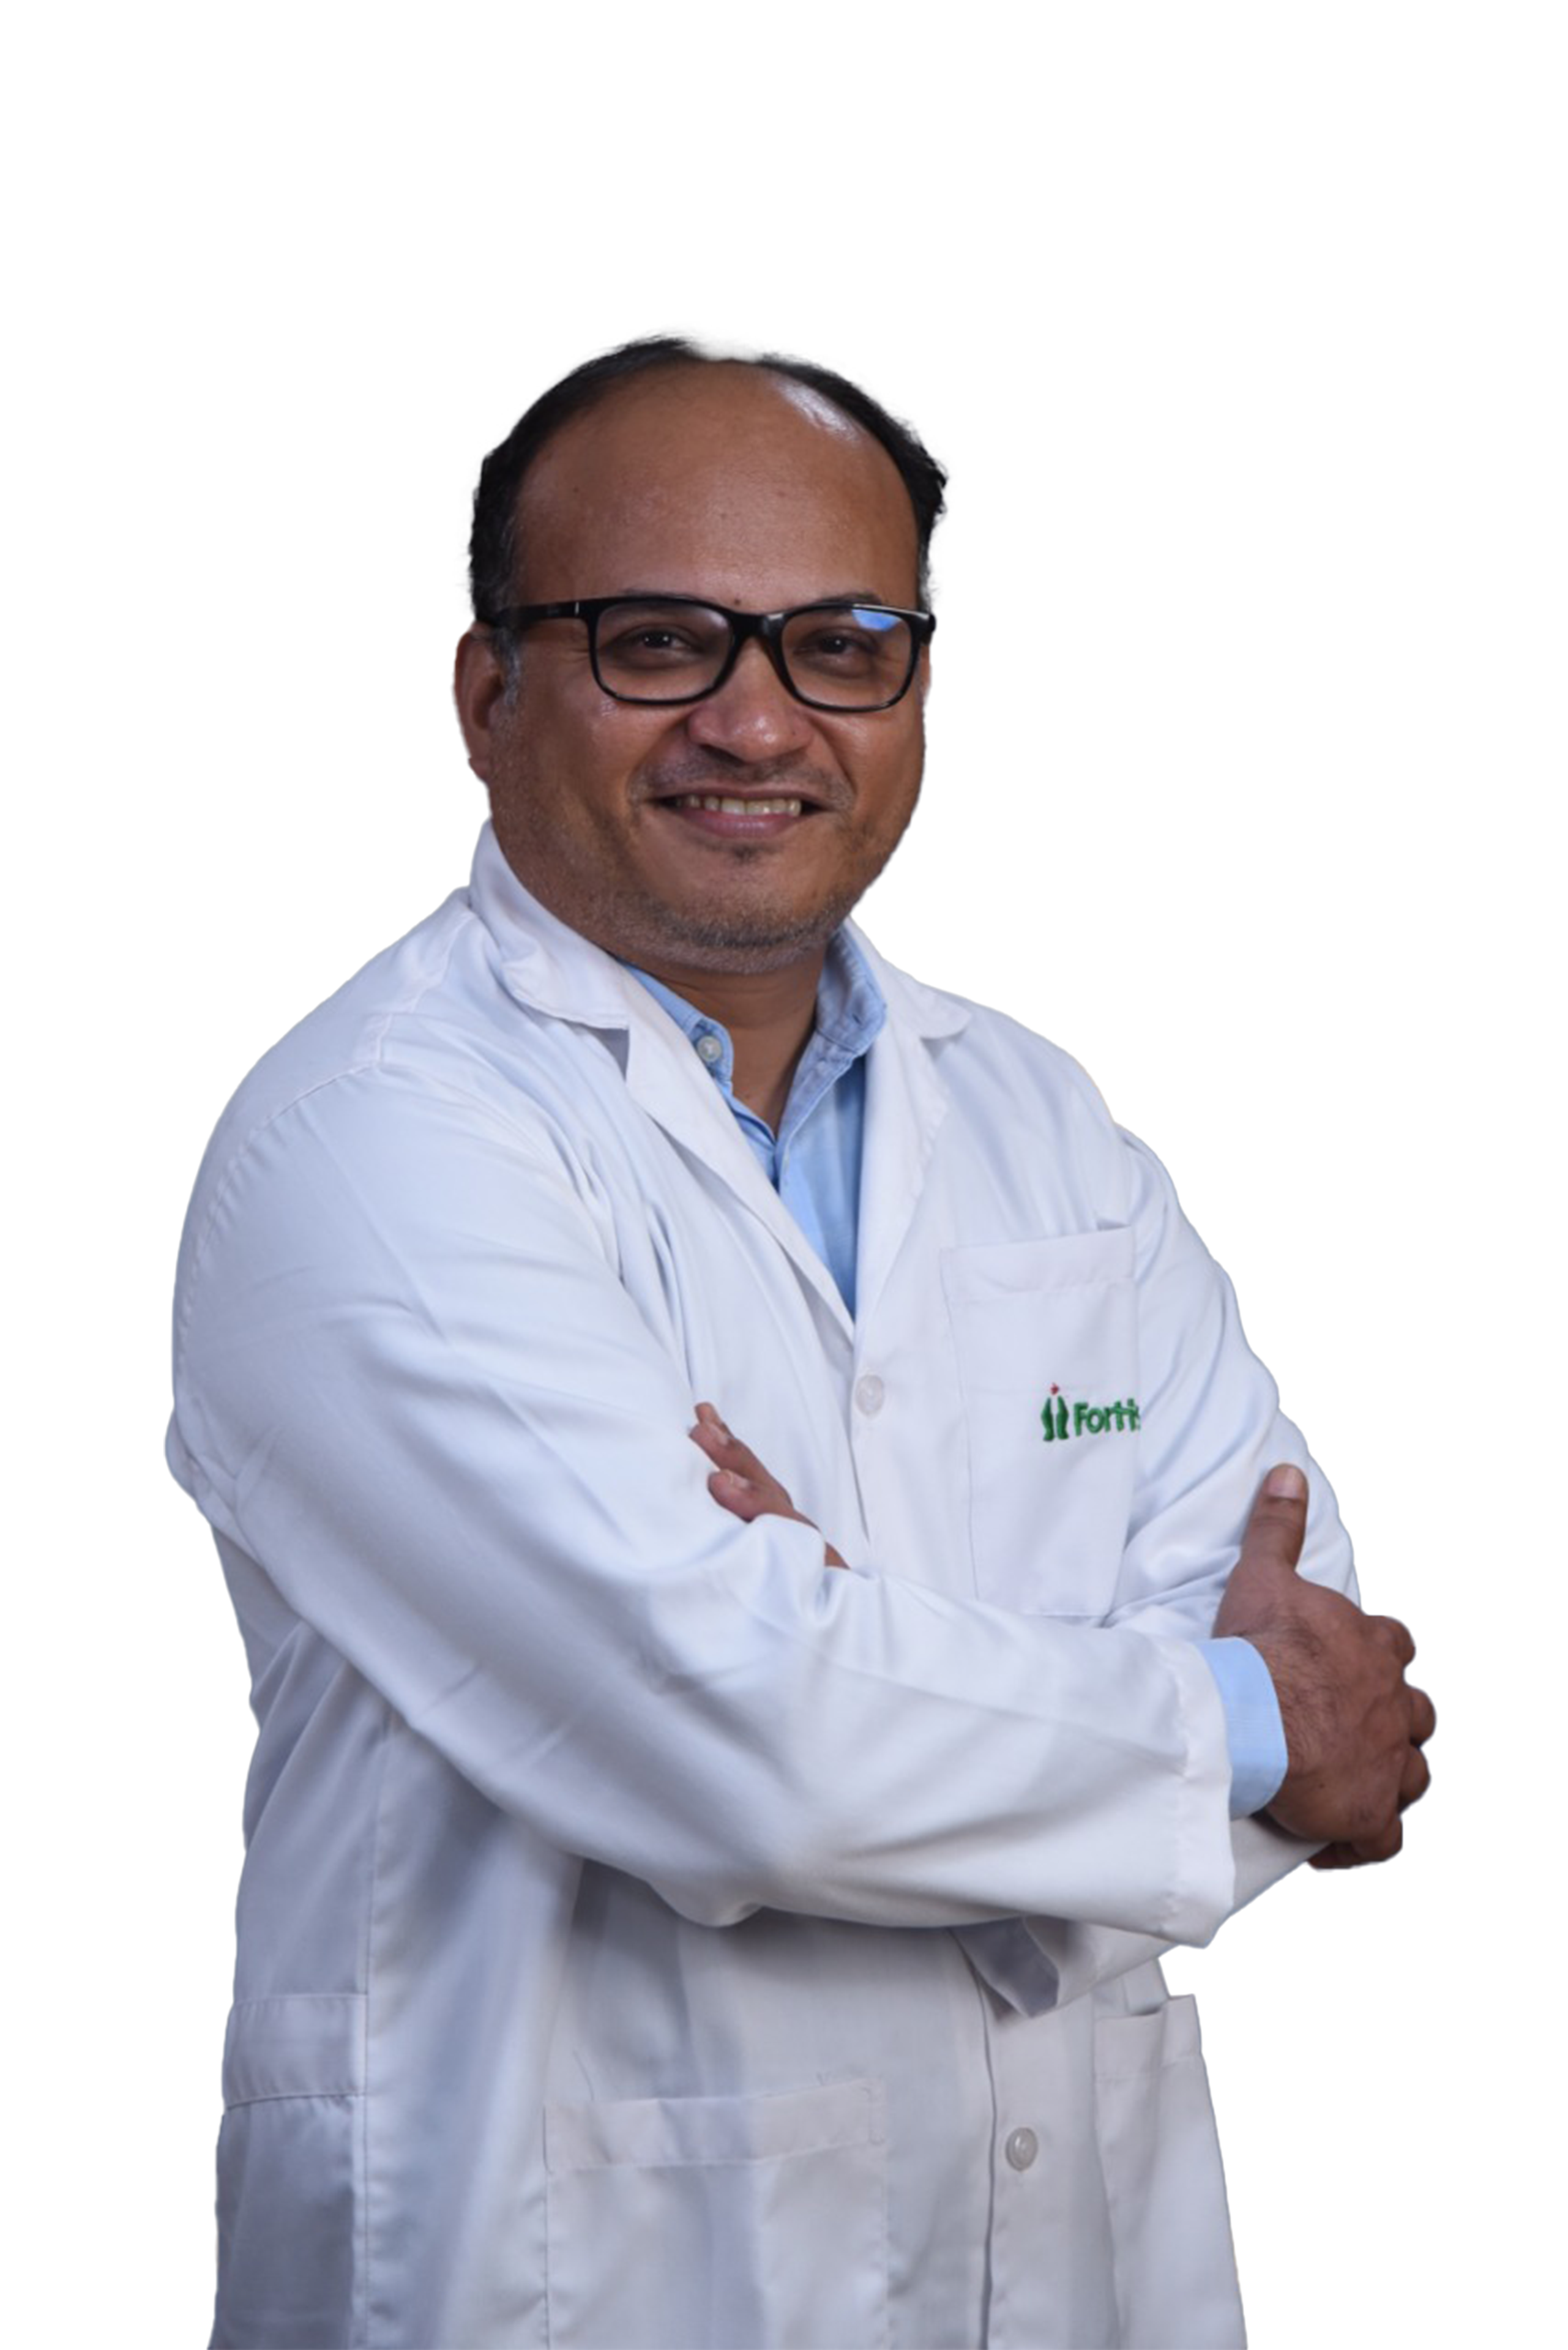 Dr. Sachin Kale